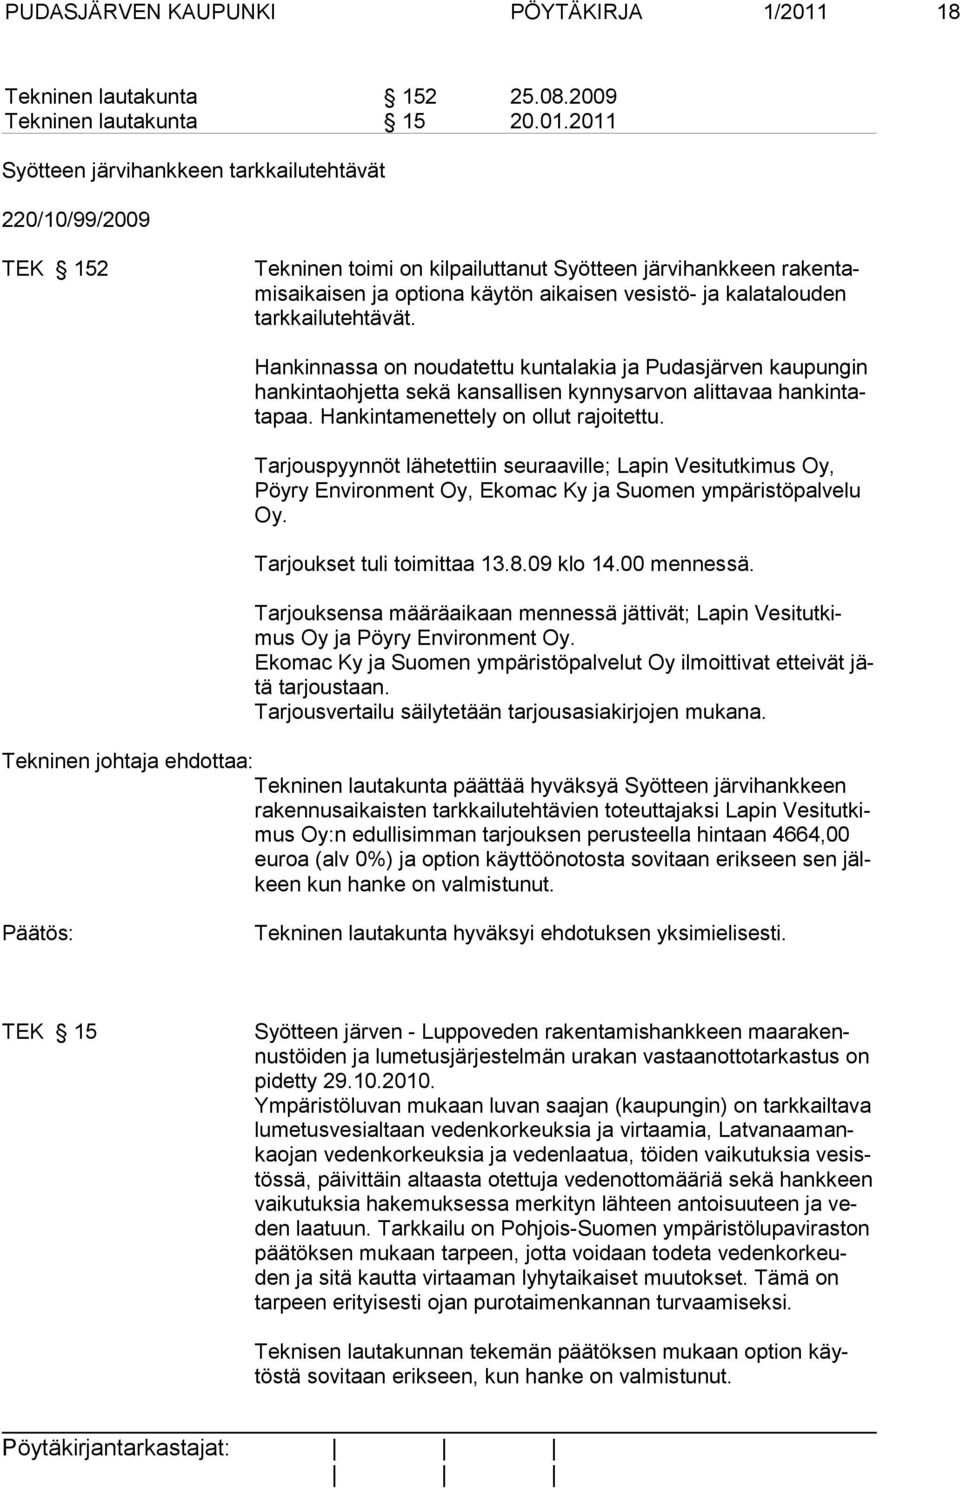 2011 Syötteen järvihankkeen tarkkailutehtävät 220/10/99/2009 TEK 152 Tekninen toimi on kilpailuttanut Syötteen järvi hank keen rakentamisaikaisen ja optiona käytön aikaisen vesistö- ja kalatalouden